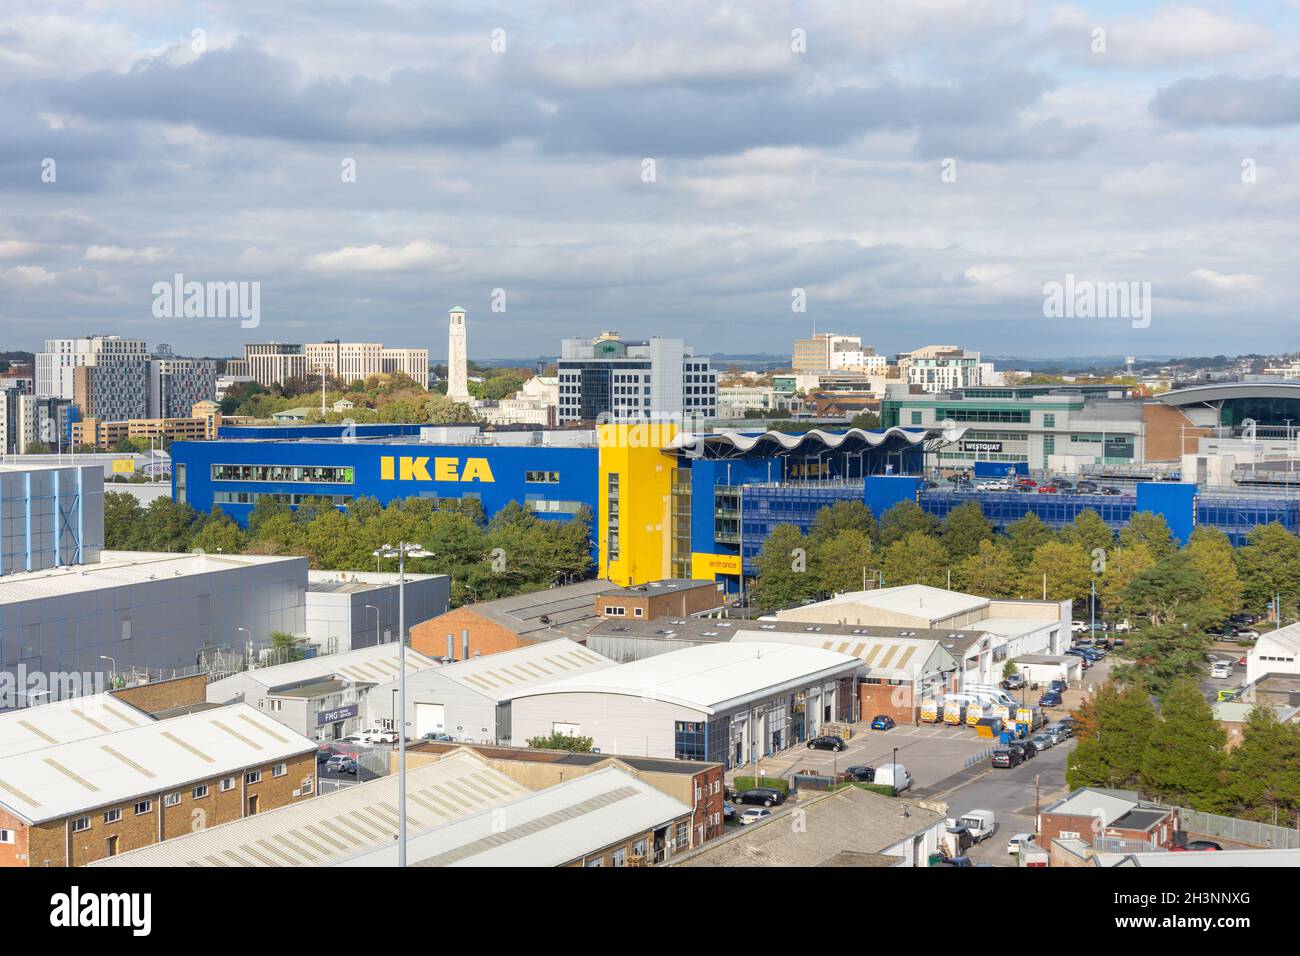 Vista del centro de la ciudad y de la tienda IKEA desde la cubierta del crucero 'Anthem of the Seas' del Caribe Real, Southampton, Hampshire, Inglaterra, Reino Unido Foto de stock